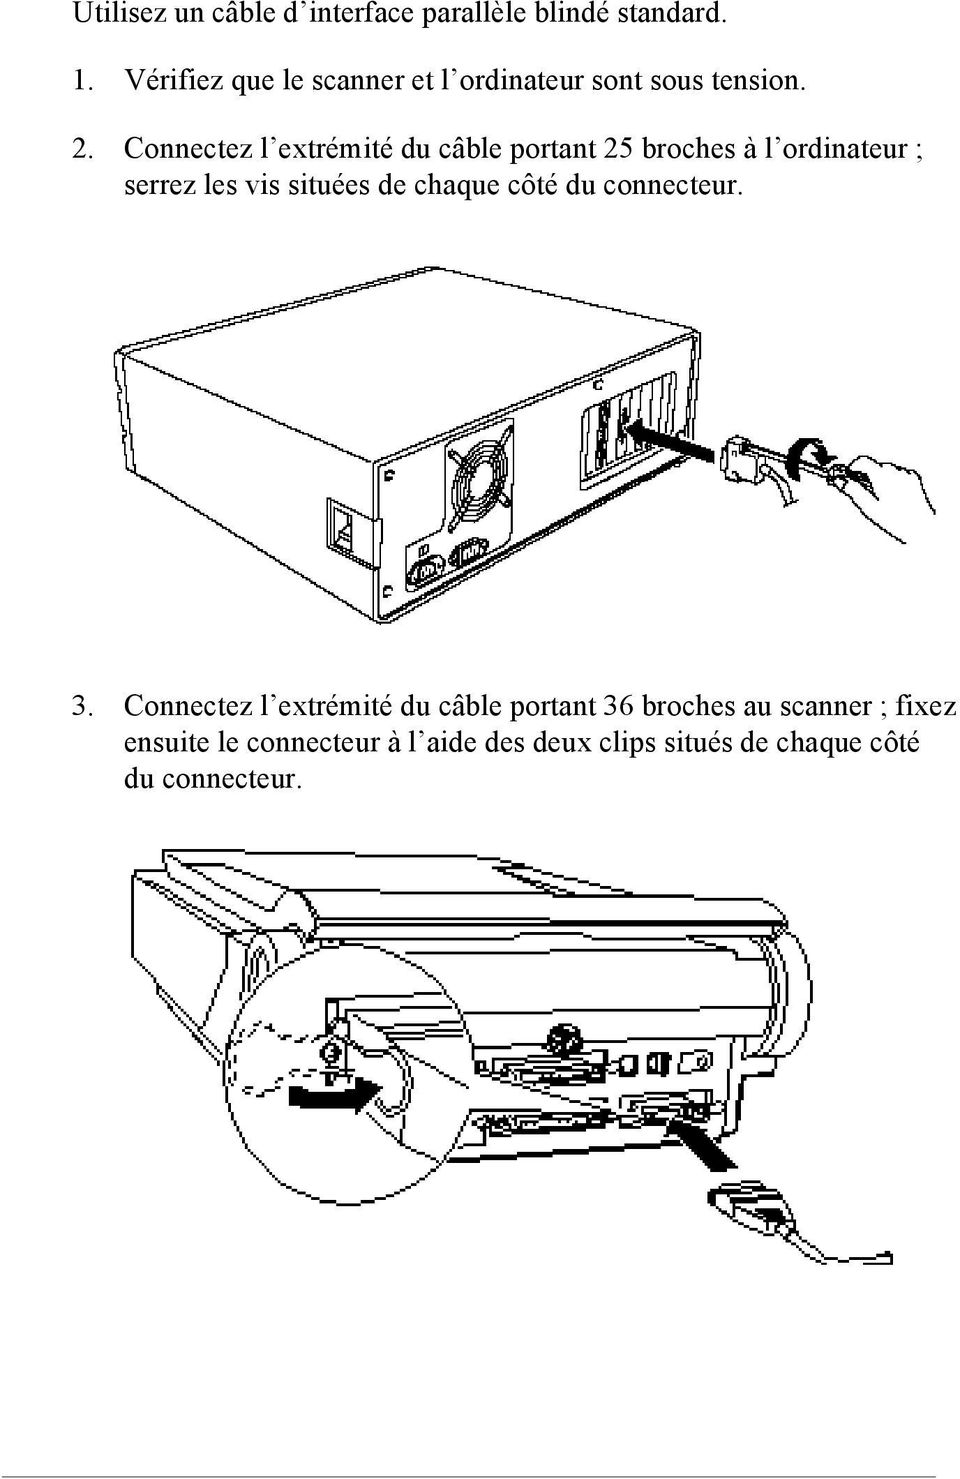 Connectez l extrémité du câble portant 25 broches à l ordinateur ; serrez les vis situées de